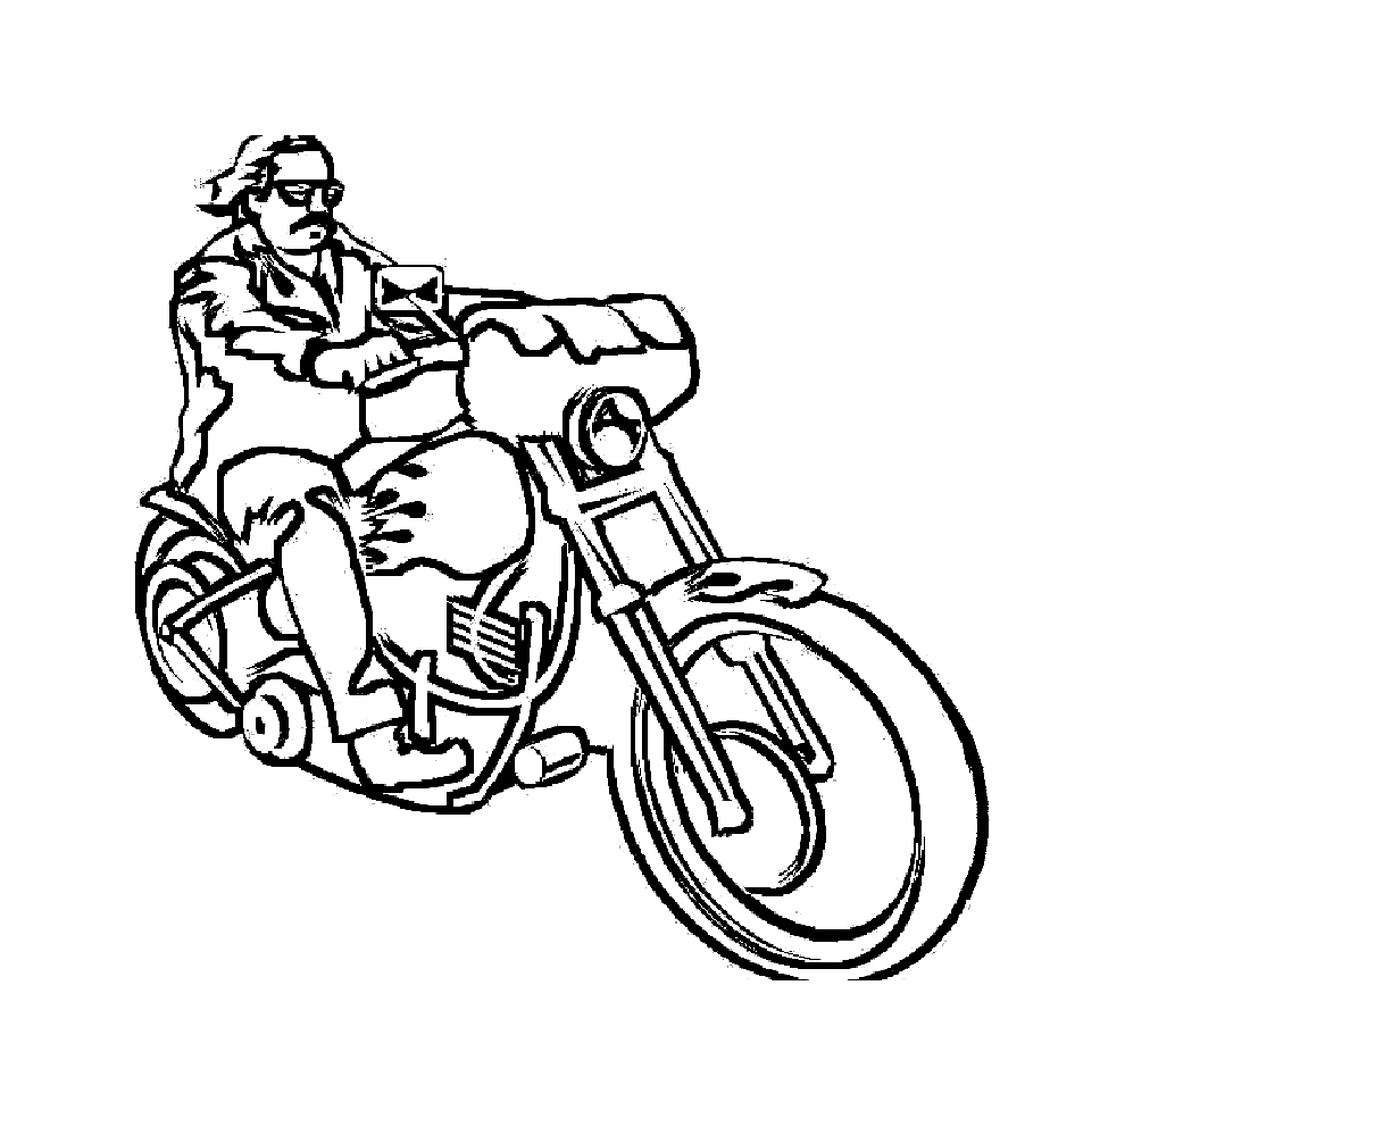   Femme assise sur une moto 